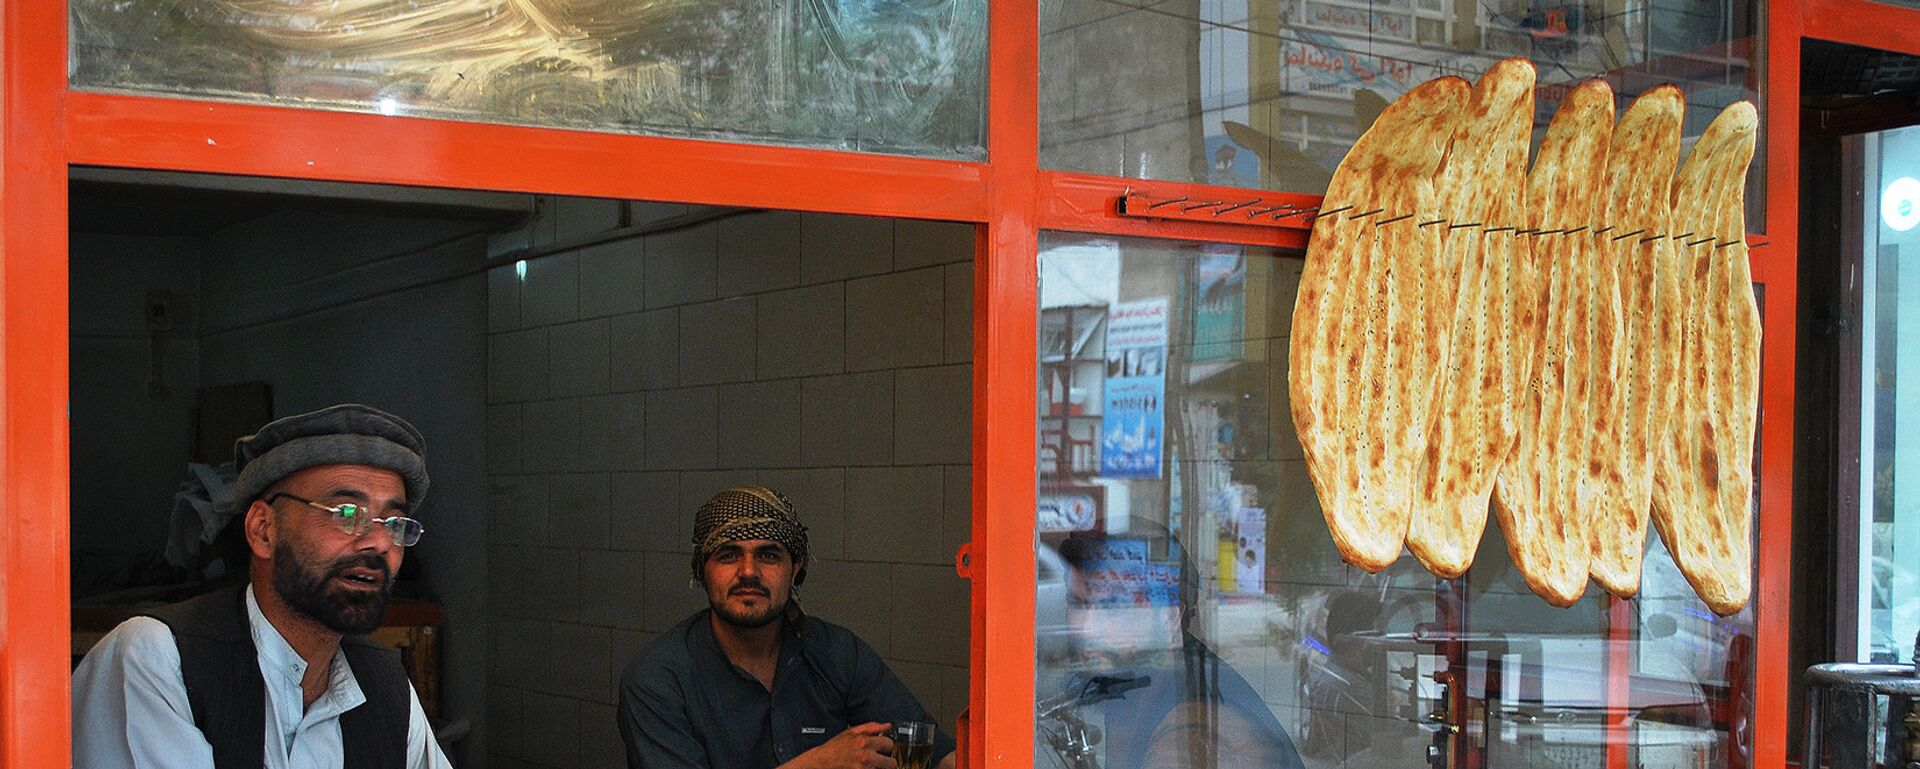 Уличная продажа свежеиспеченного хлеба в Кабуле, архивное фото - Sputnik Тоҷикистон, 1920, 16.12.2021